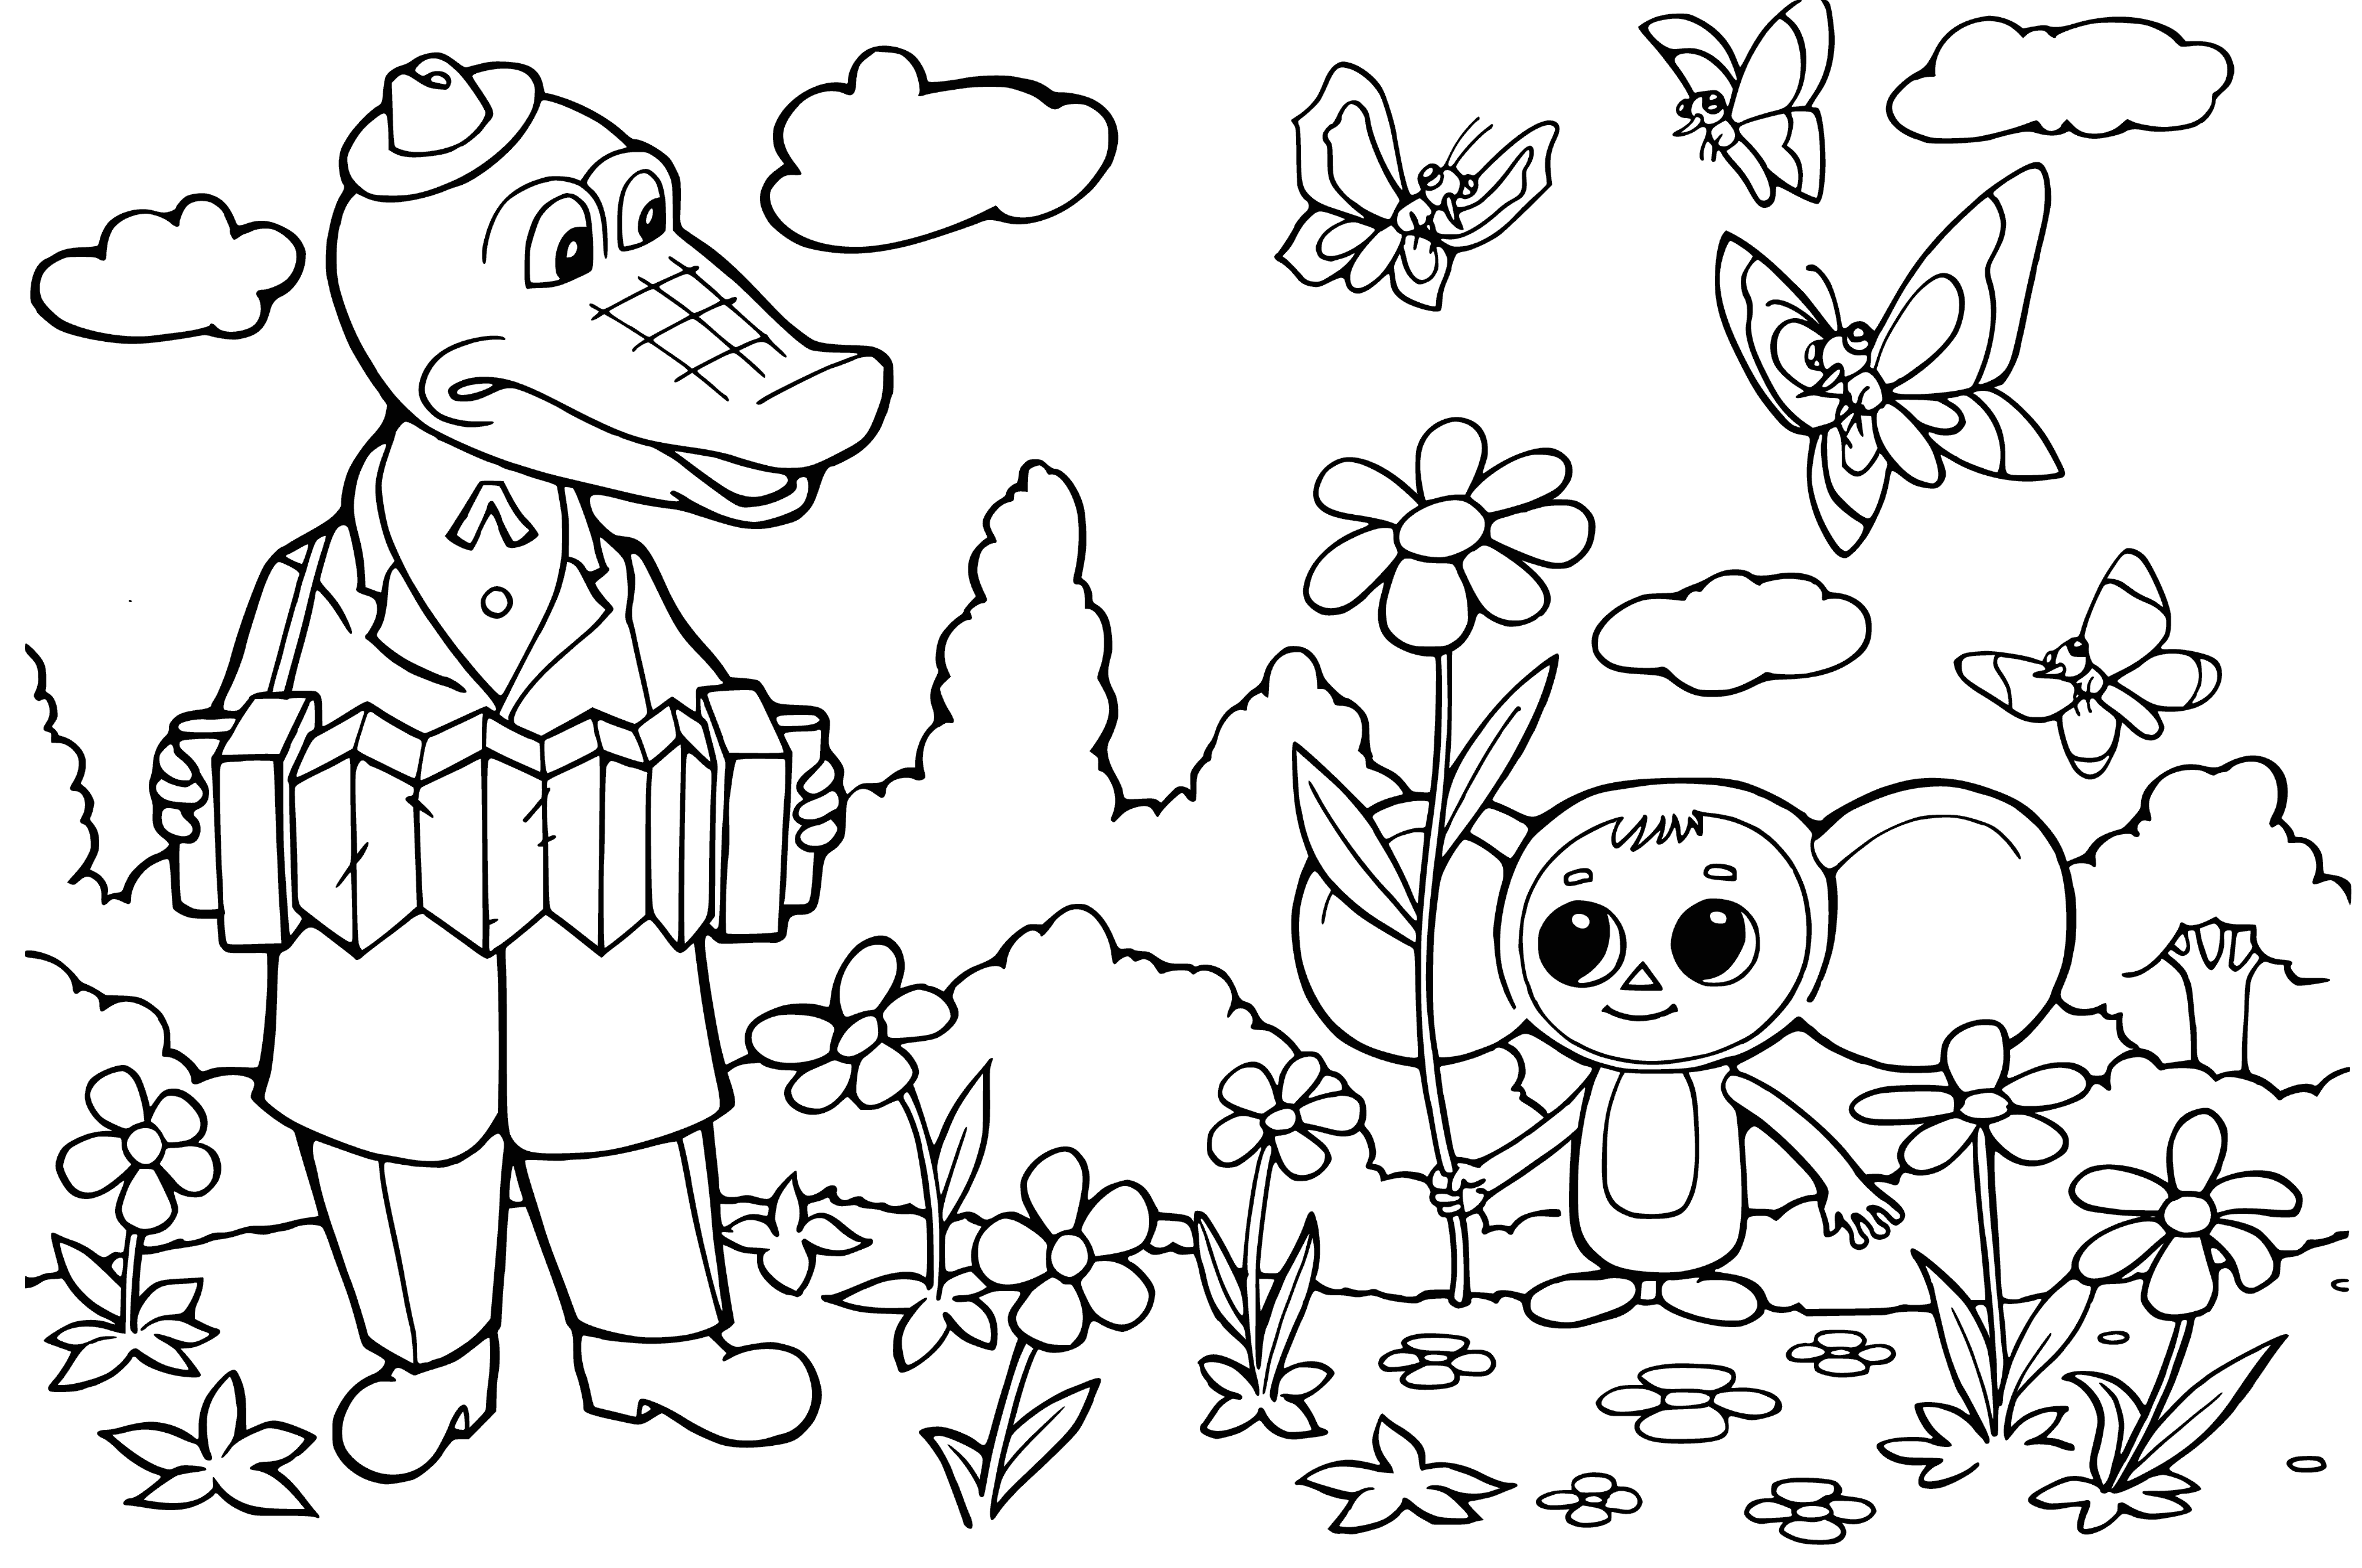 Gena et Cheburashka coloriage